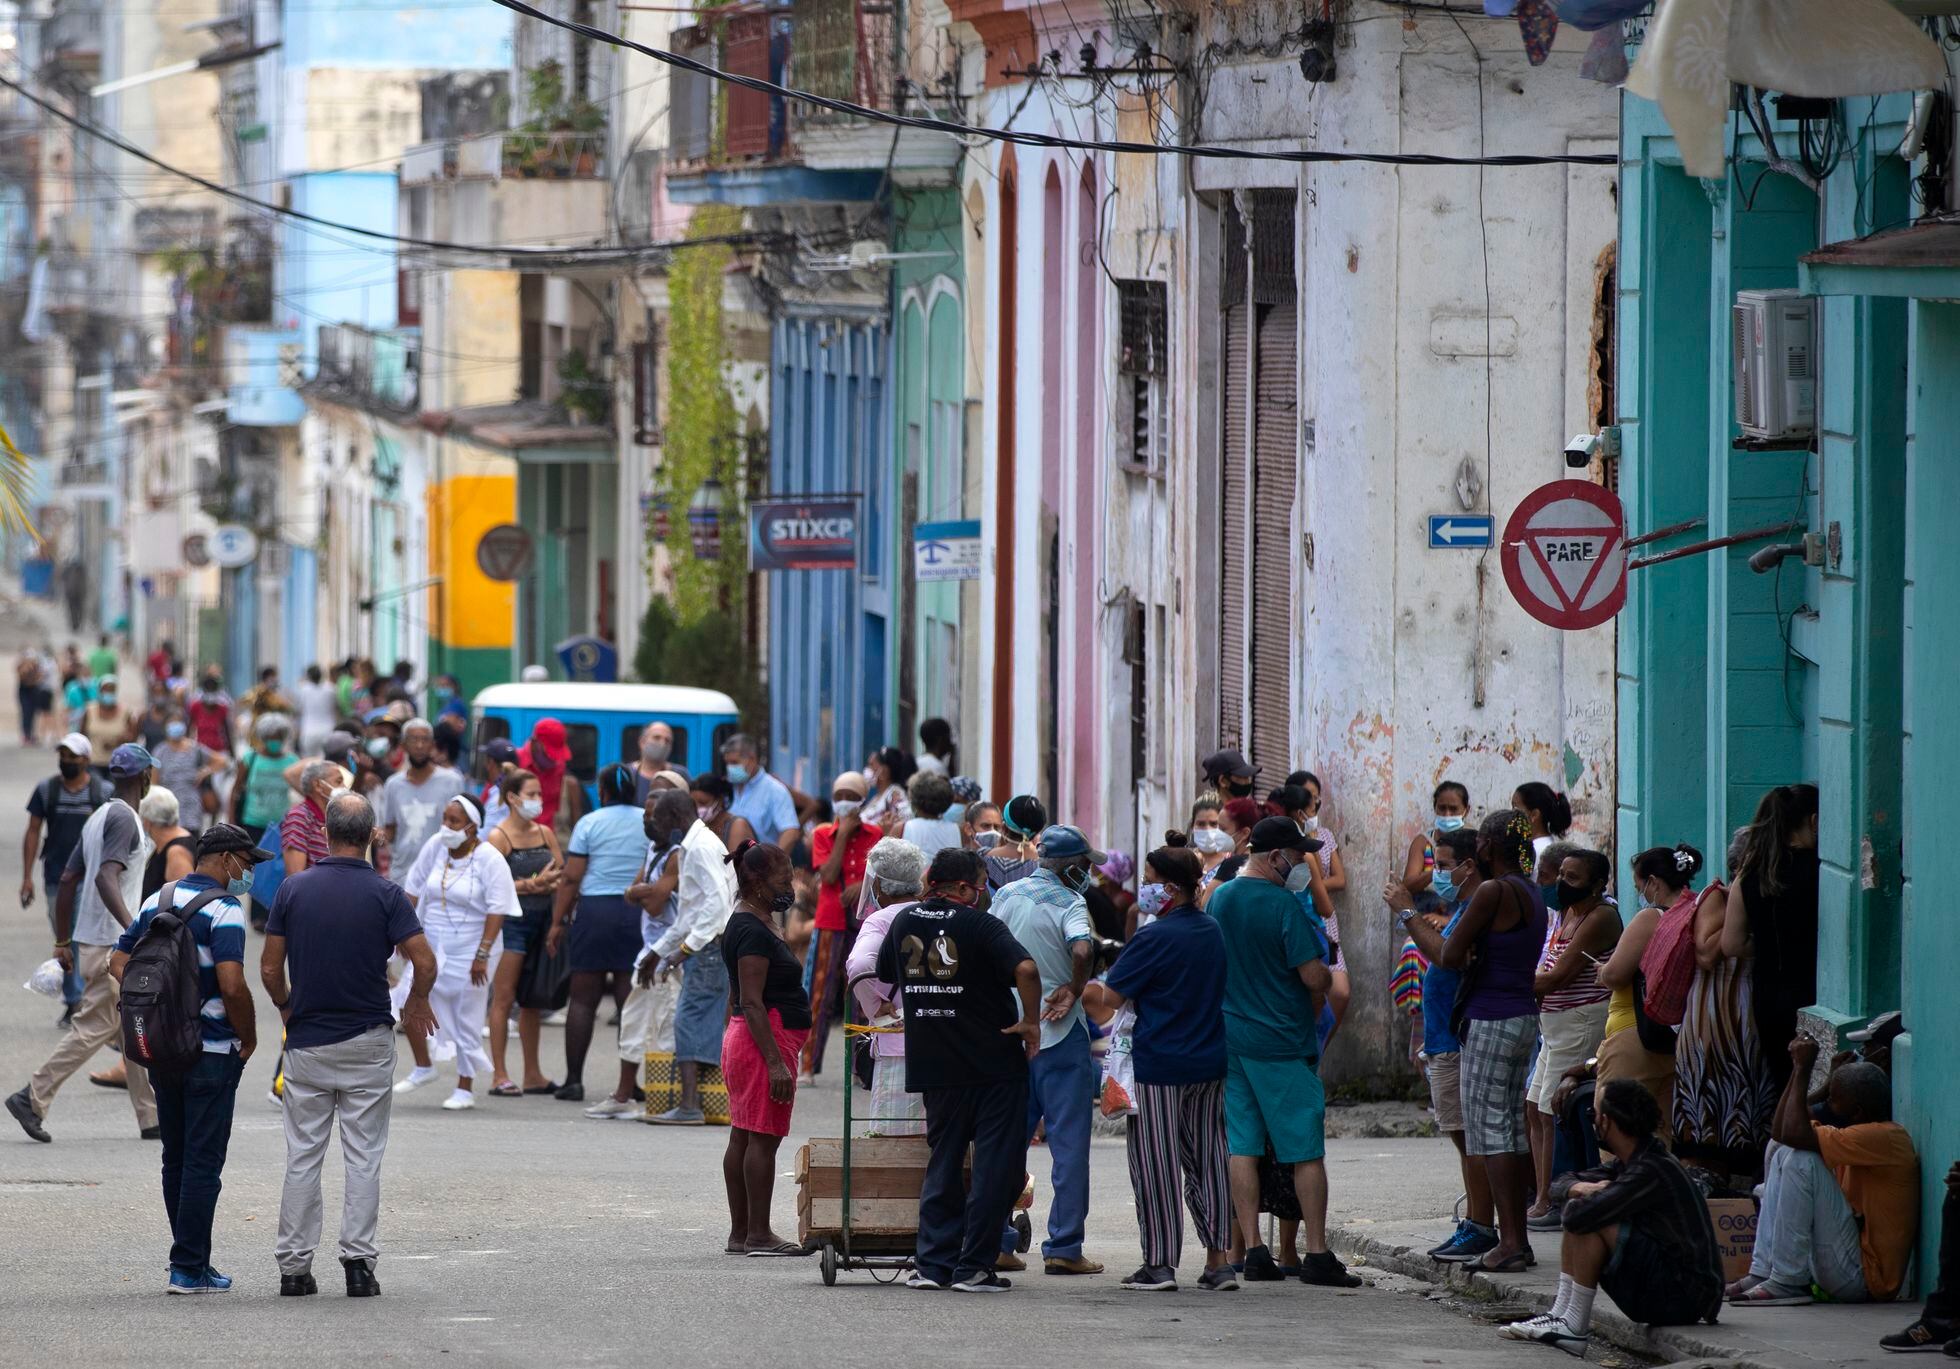 Personas esperan su turno para comprar comida, en una de las calles de Centro Habana.